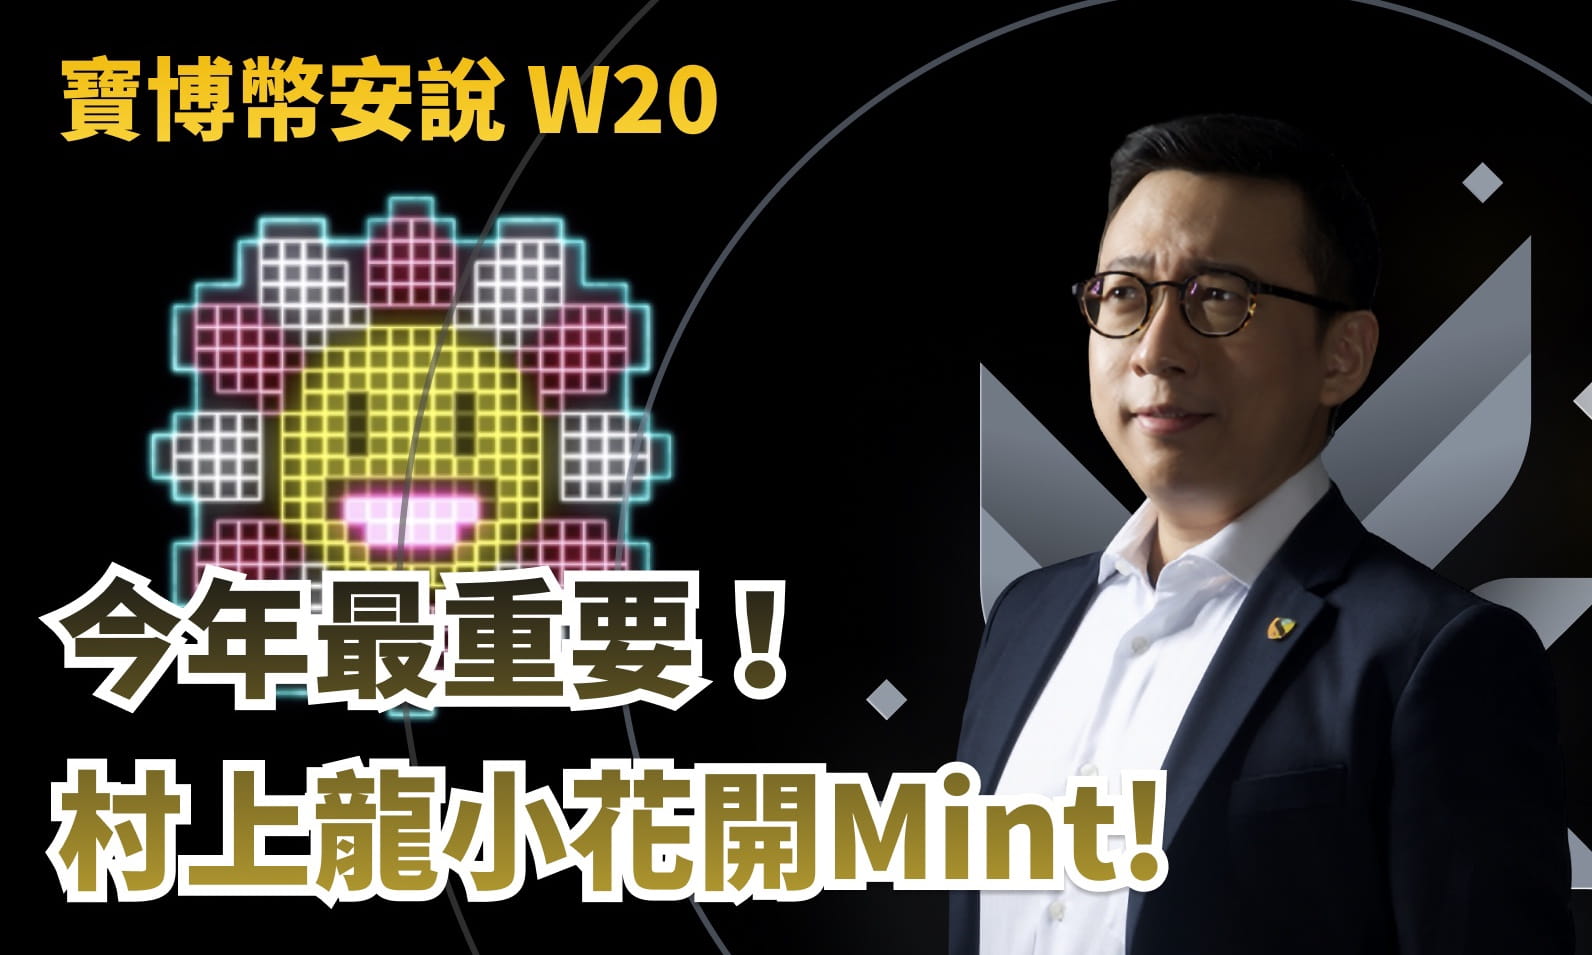 寶博幣安說 W20
今年最重要！
村上隆小花開 Mint!!